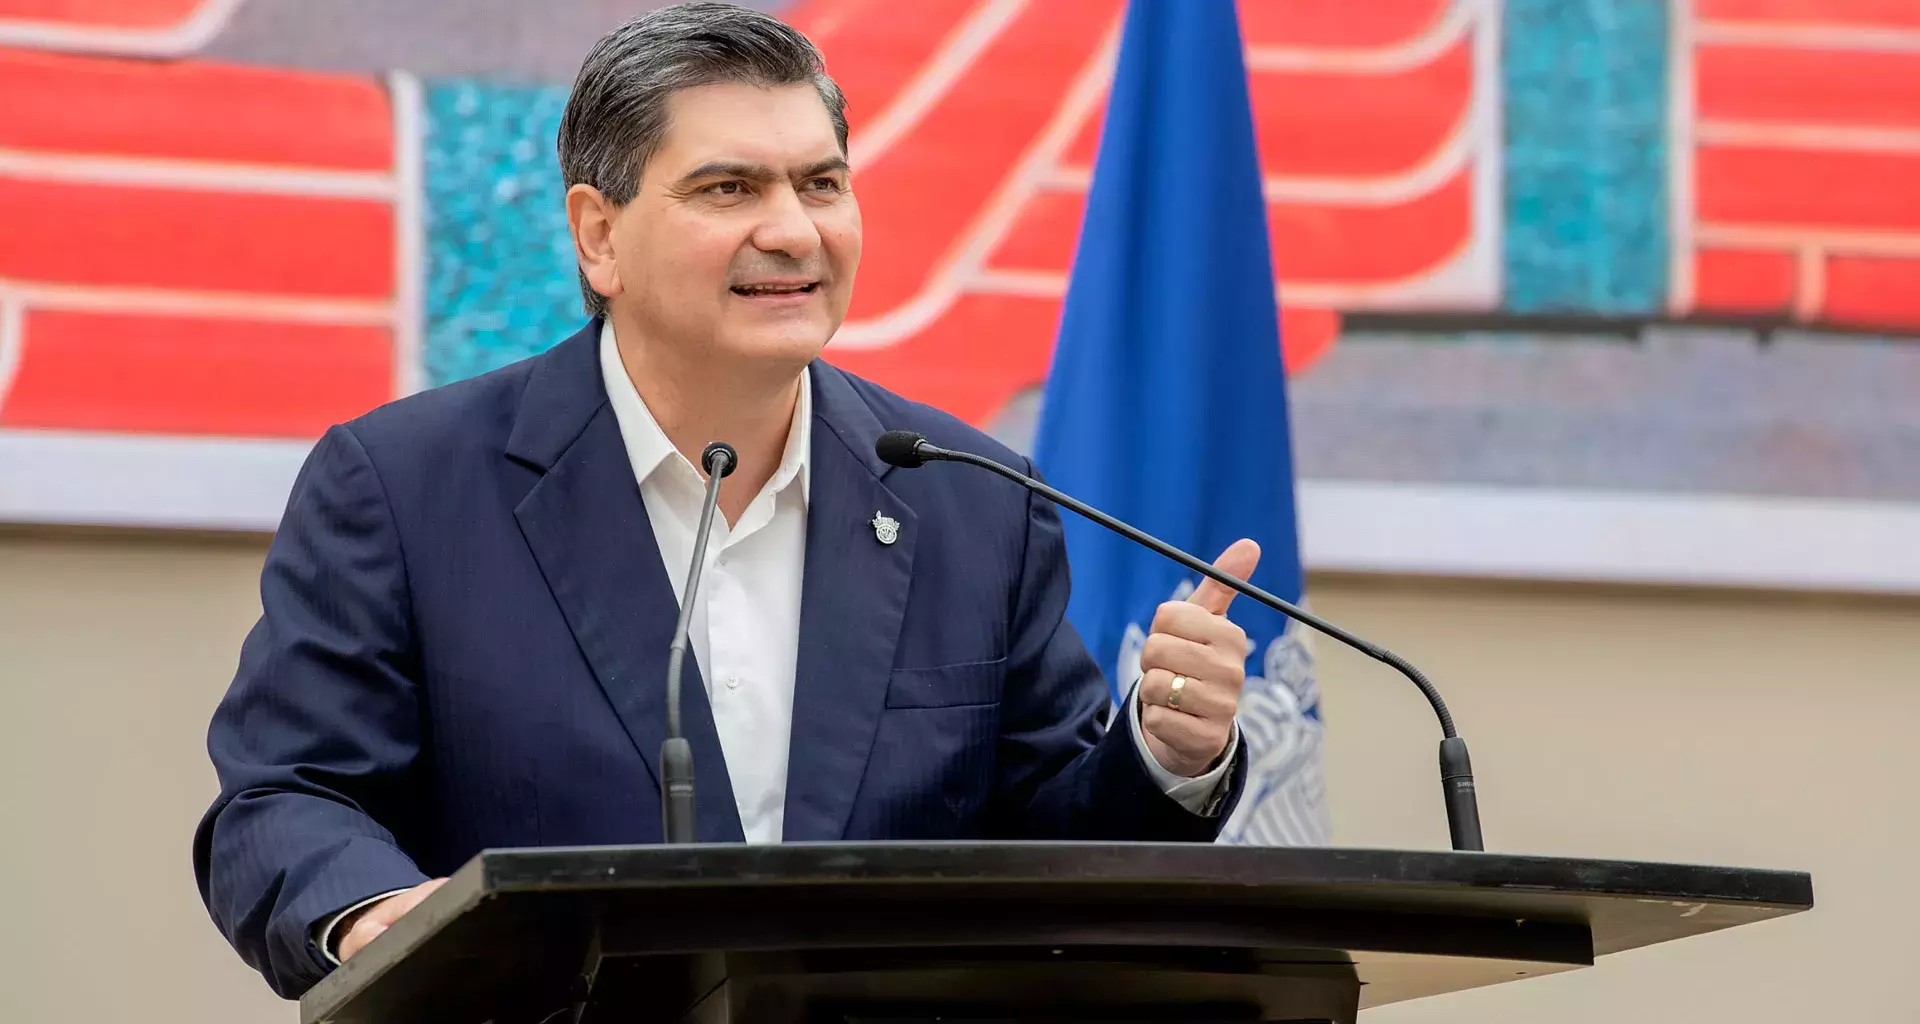 David Garza’s tenure as Tec de Monterrey president begins